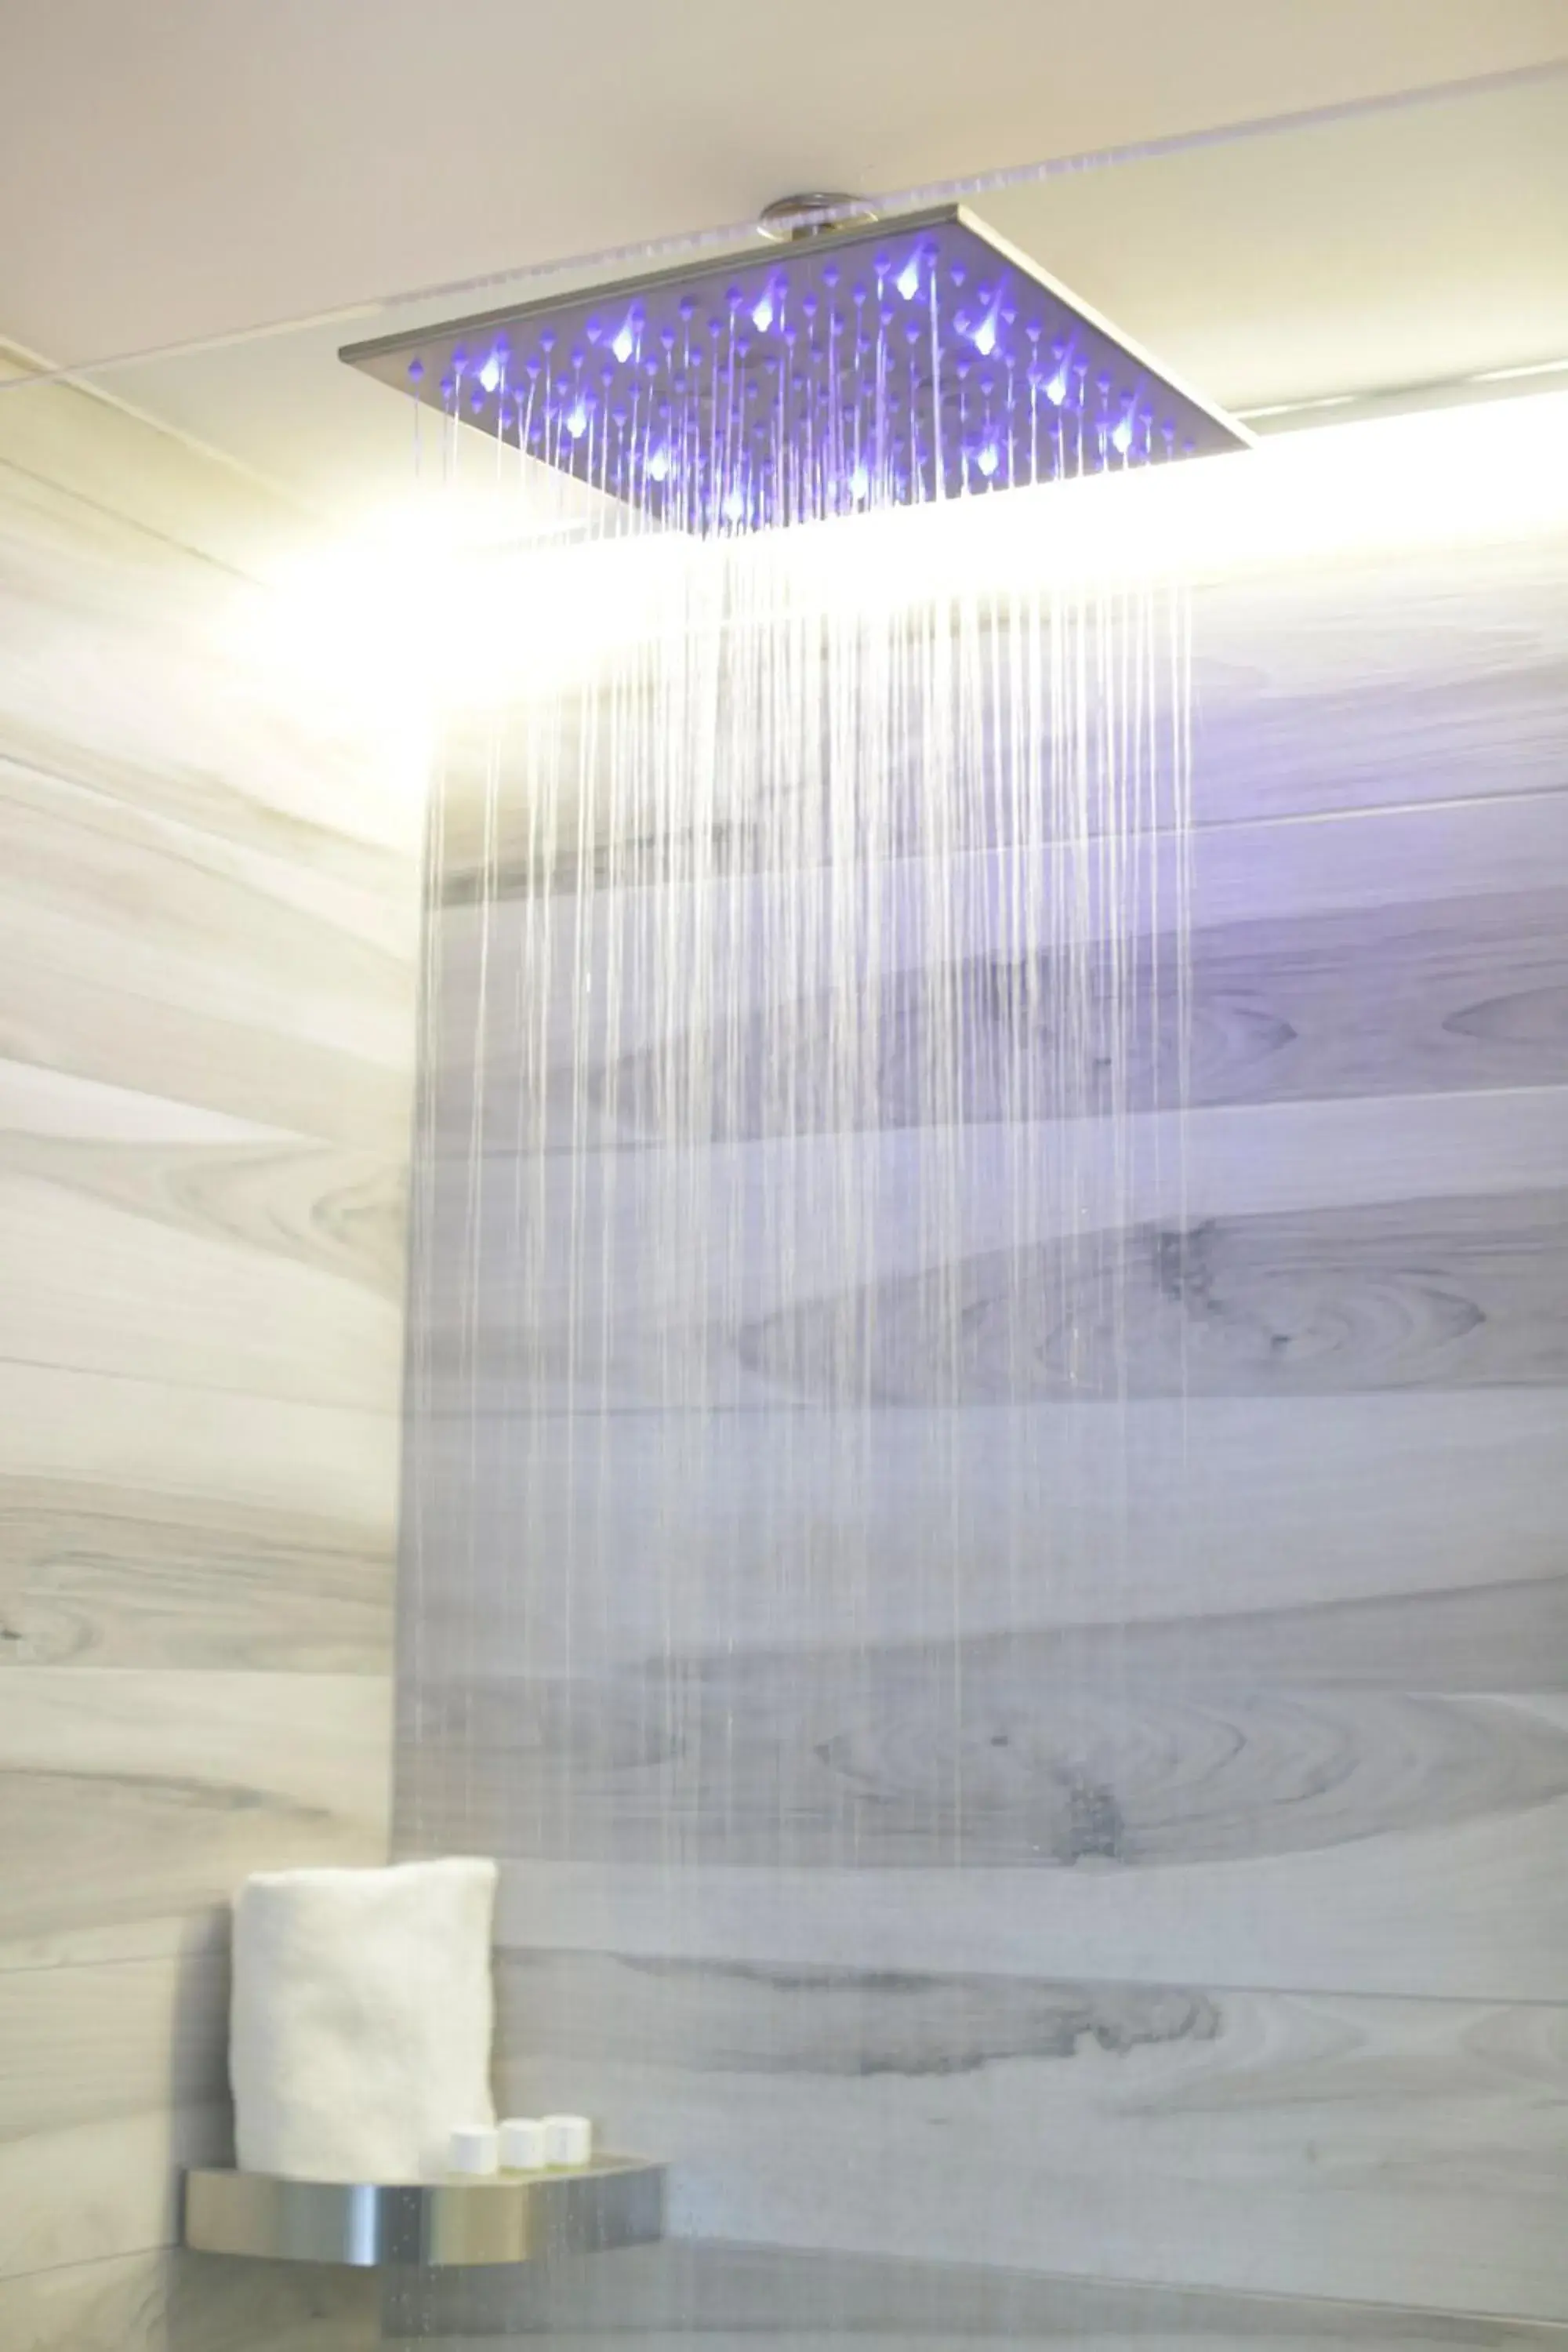 Shower, Bathroom in Hotel Vergilius Billia